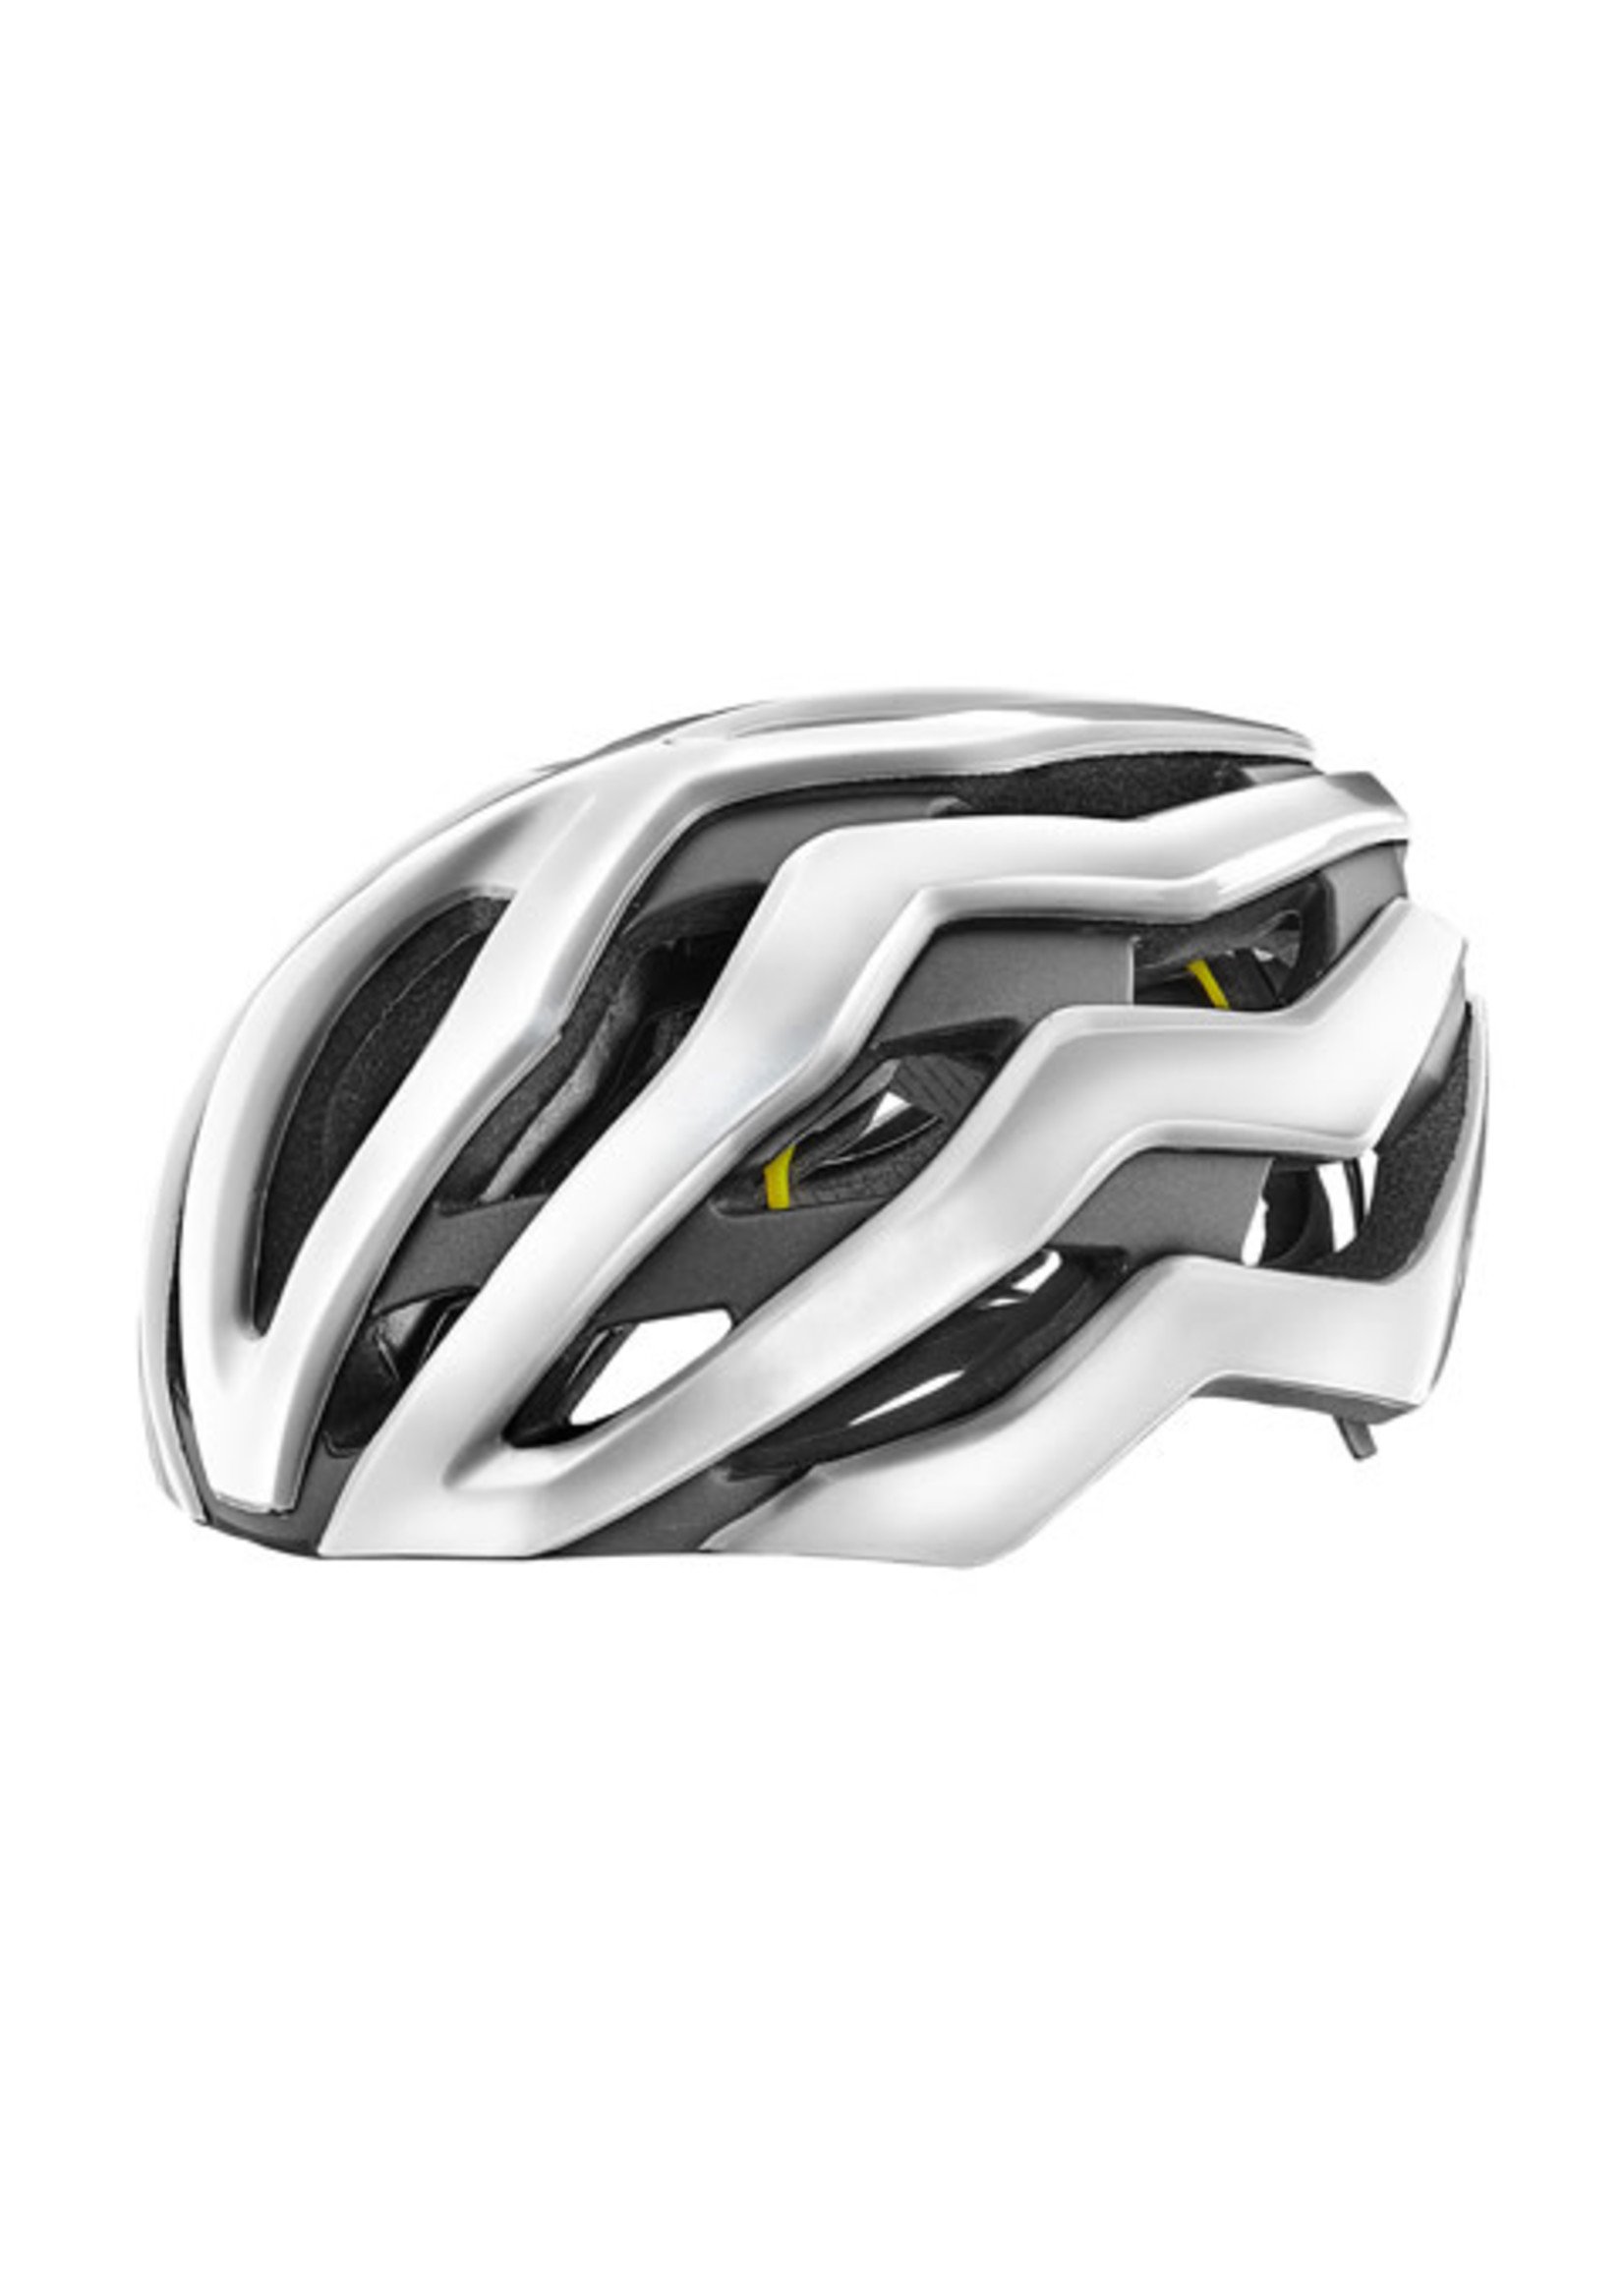 Giant GNT Rev Pro MIPS Helmet LG Gloss Metallic White